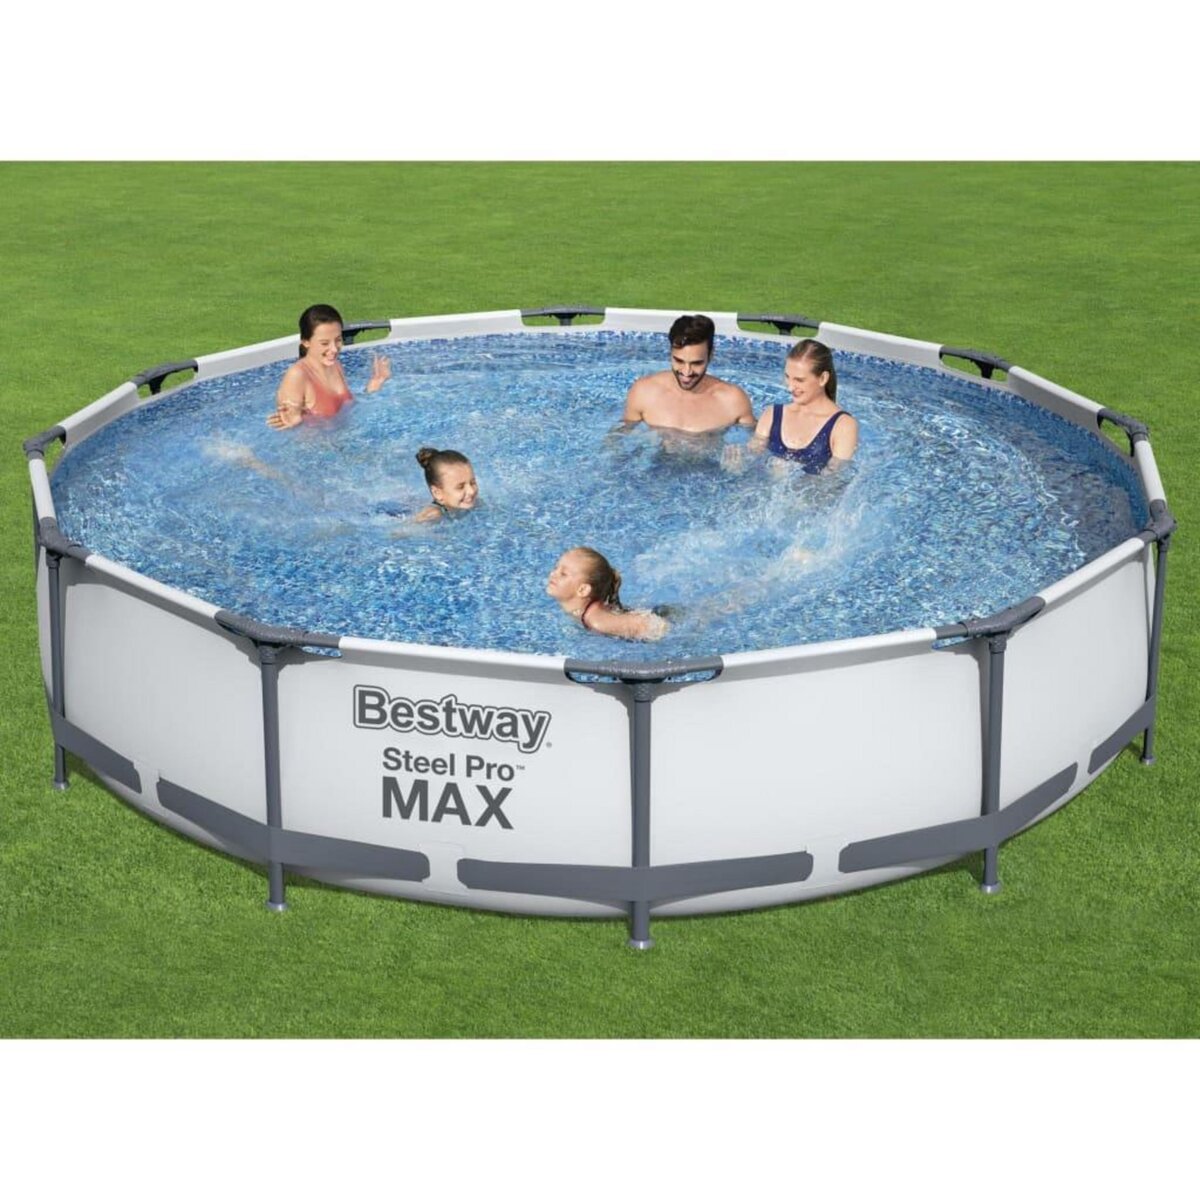 BESTWAY Bestway Ensemble de piscine Steel Pro MAX 366x76 cm